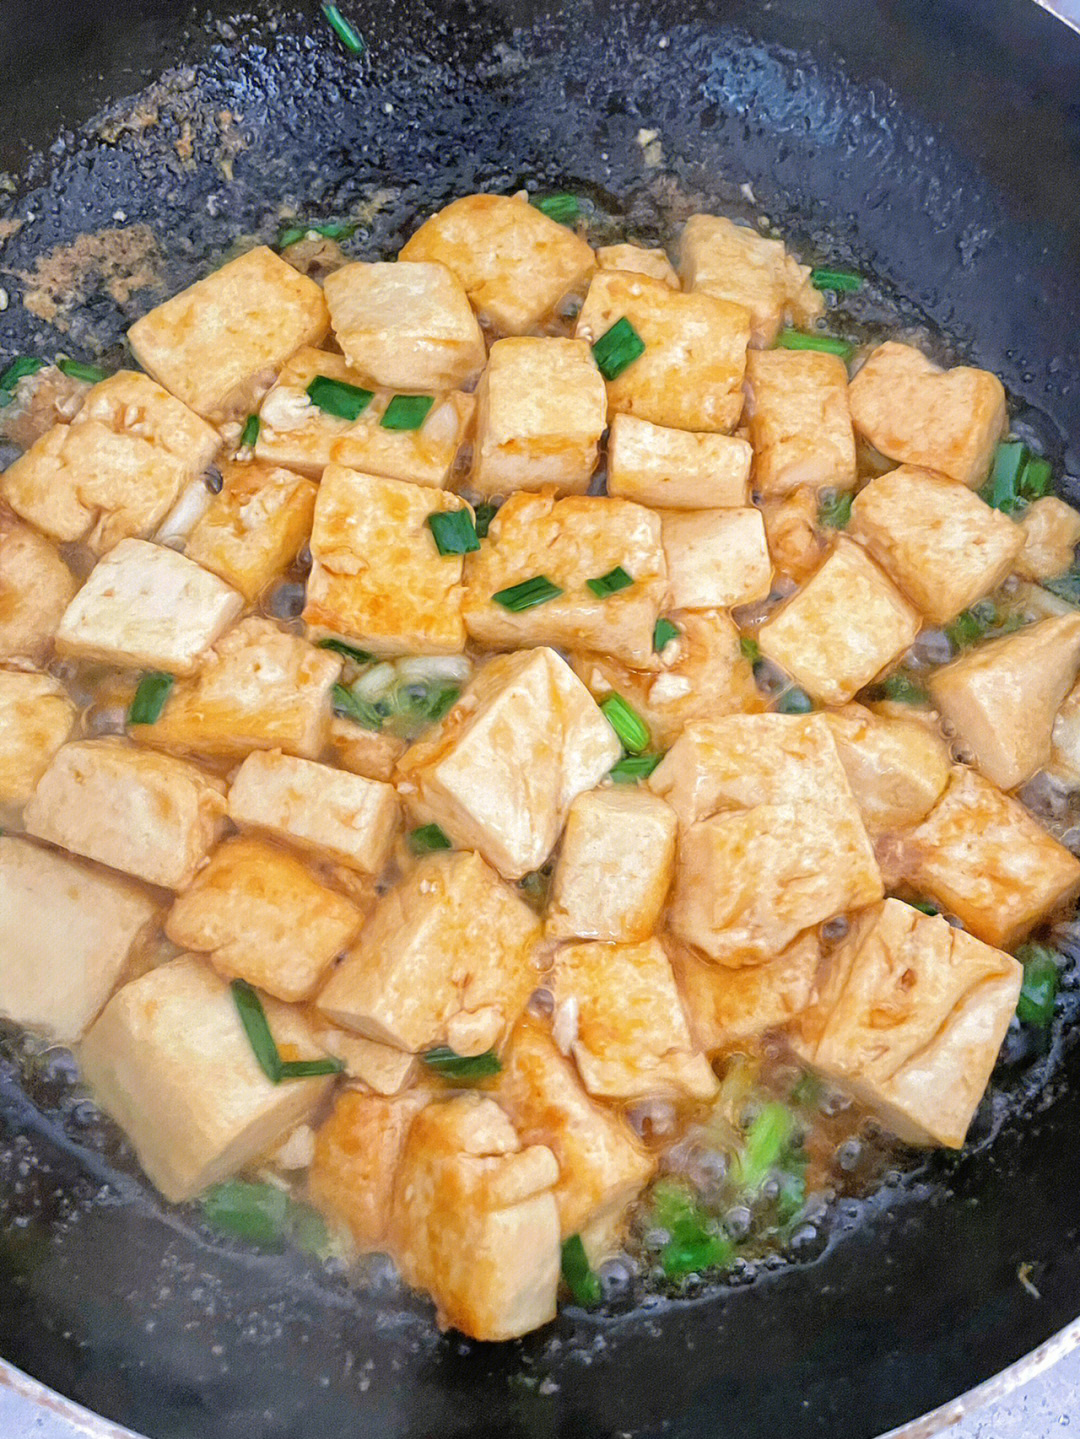 水豆腐的做法大全图解图片